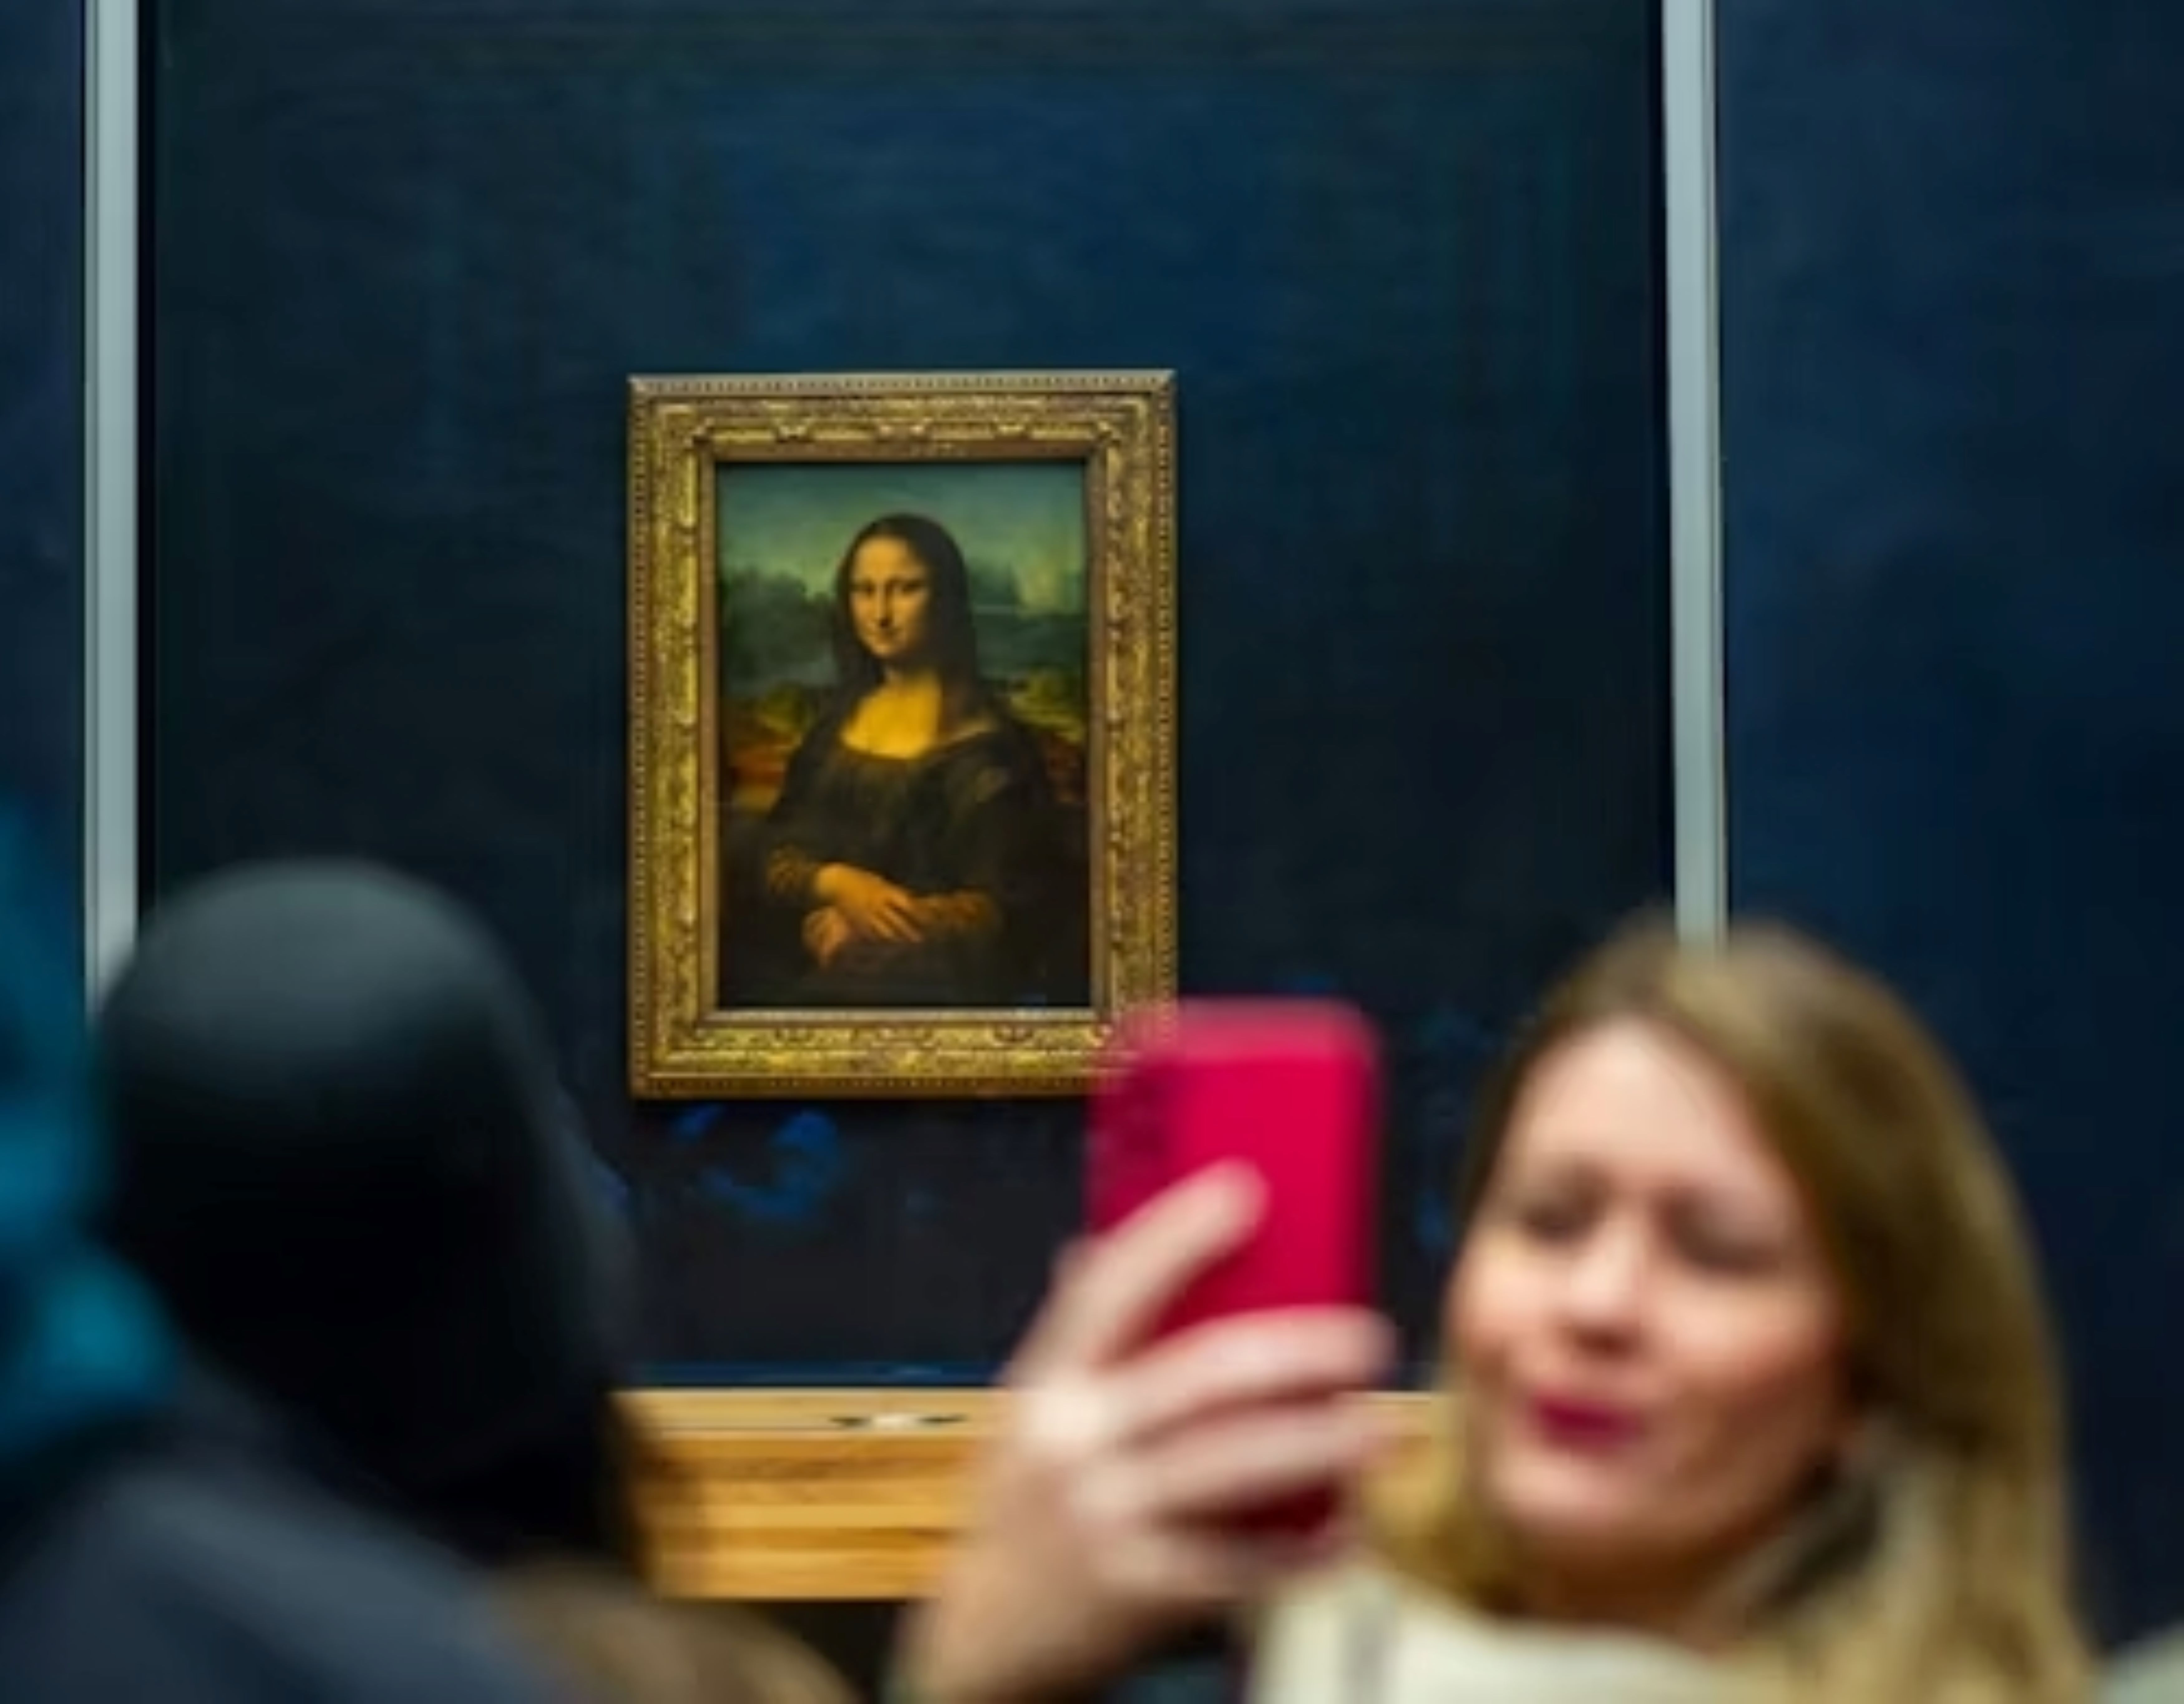 Eintritt in den Louvre mit Besichtigung des Gemäldes Mona Lisa (reservierter Zugang) und Kreuzfahrtkarte